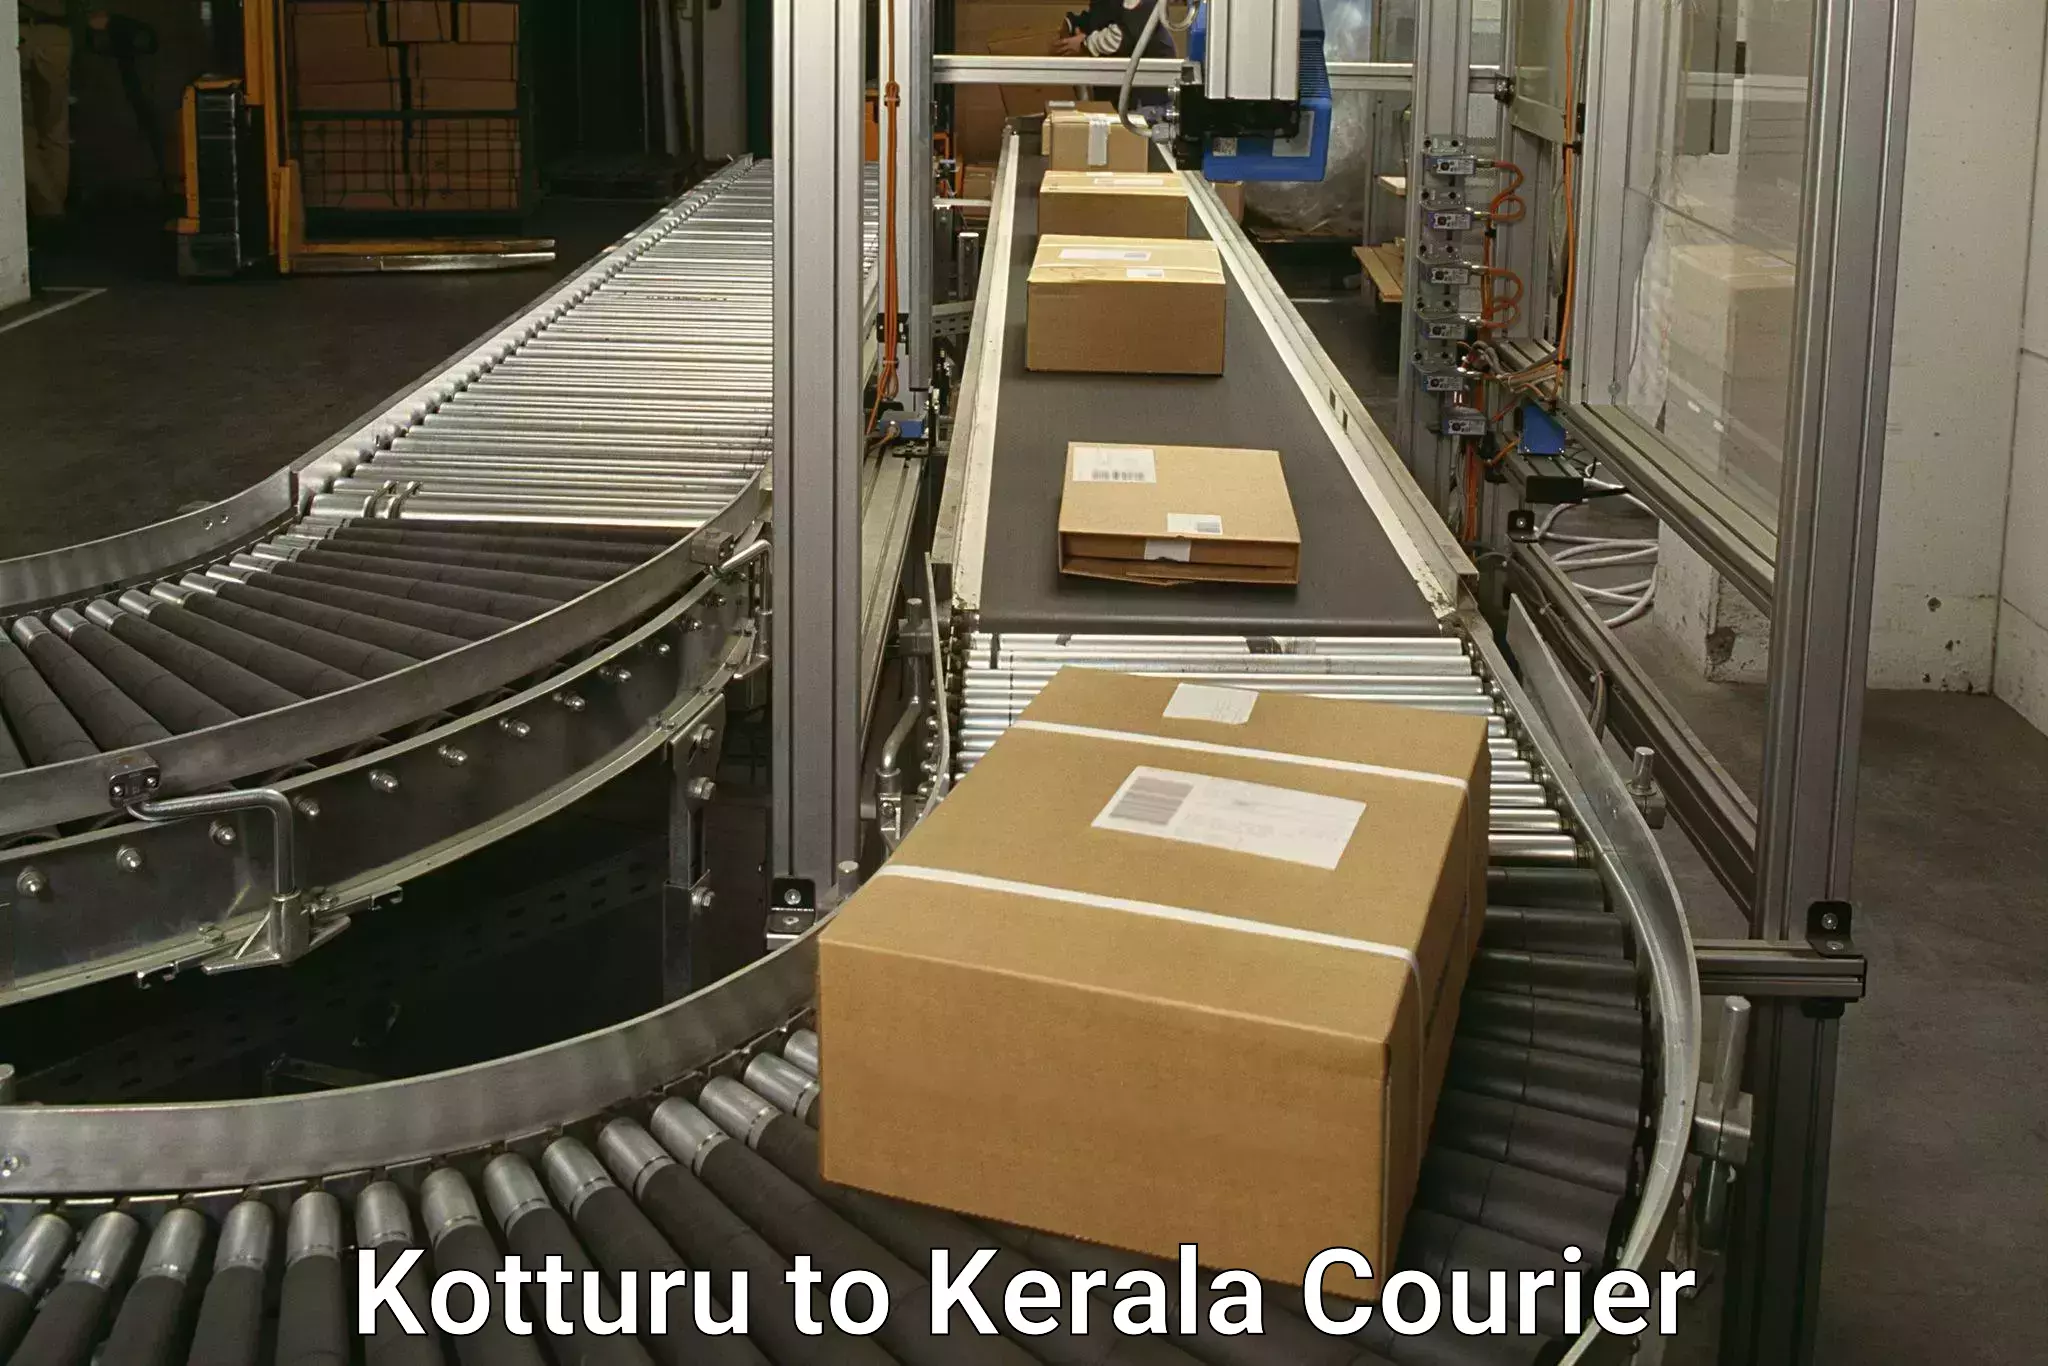 Reliable package handling Kotturu to Kerala